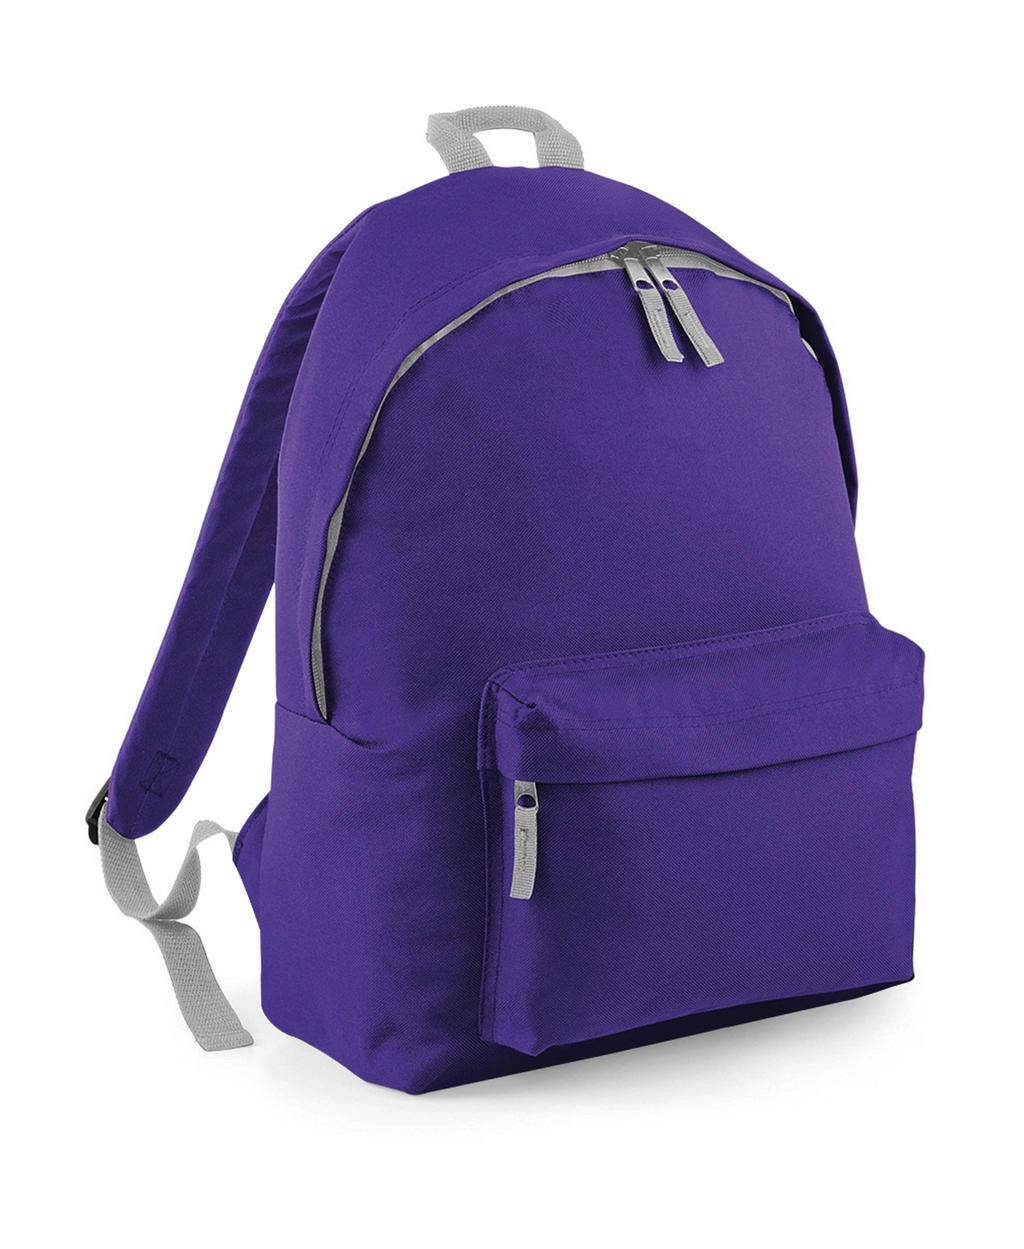 Junior Fashion Backpack zum Besticken und Bedrucken in der Farbe Purple/Light Grey mit Ihren Logo, Schriftzug oder Motiv.